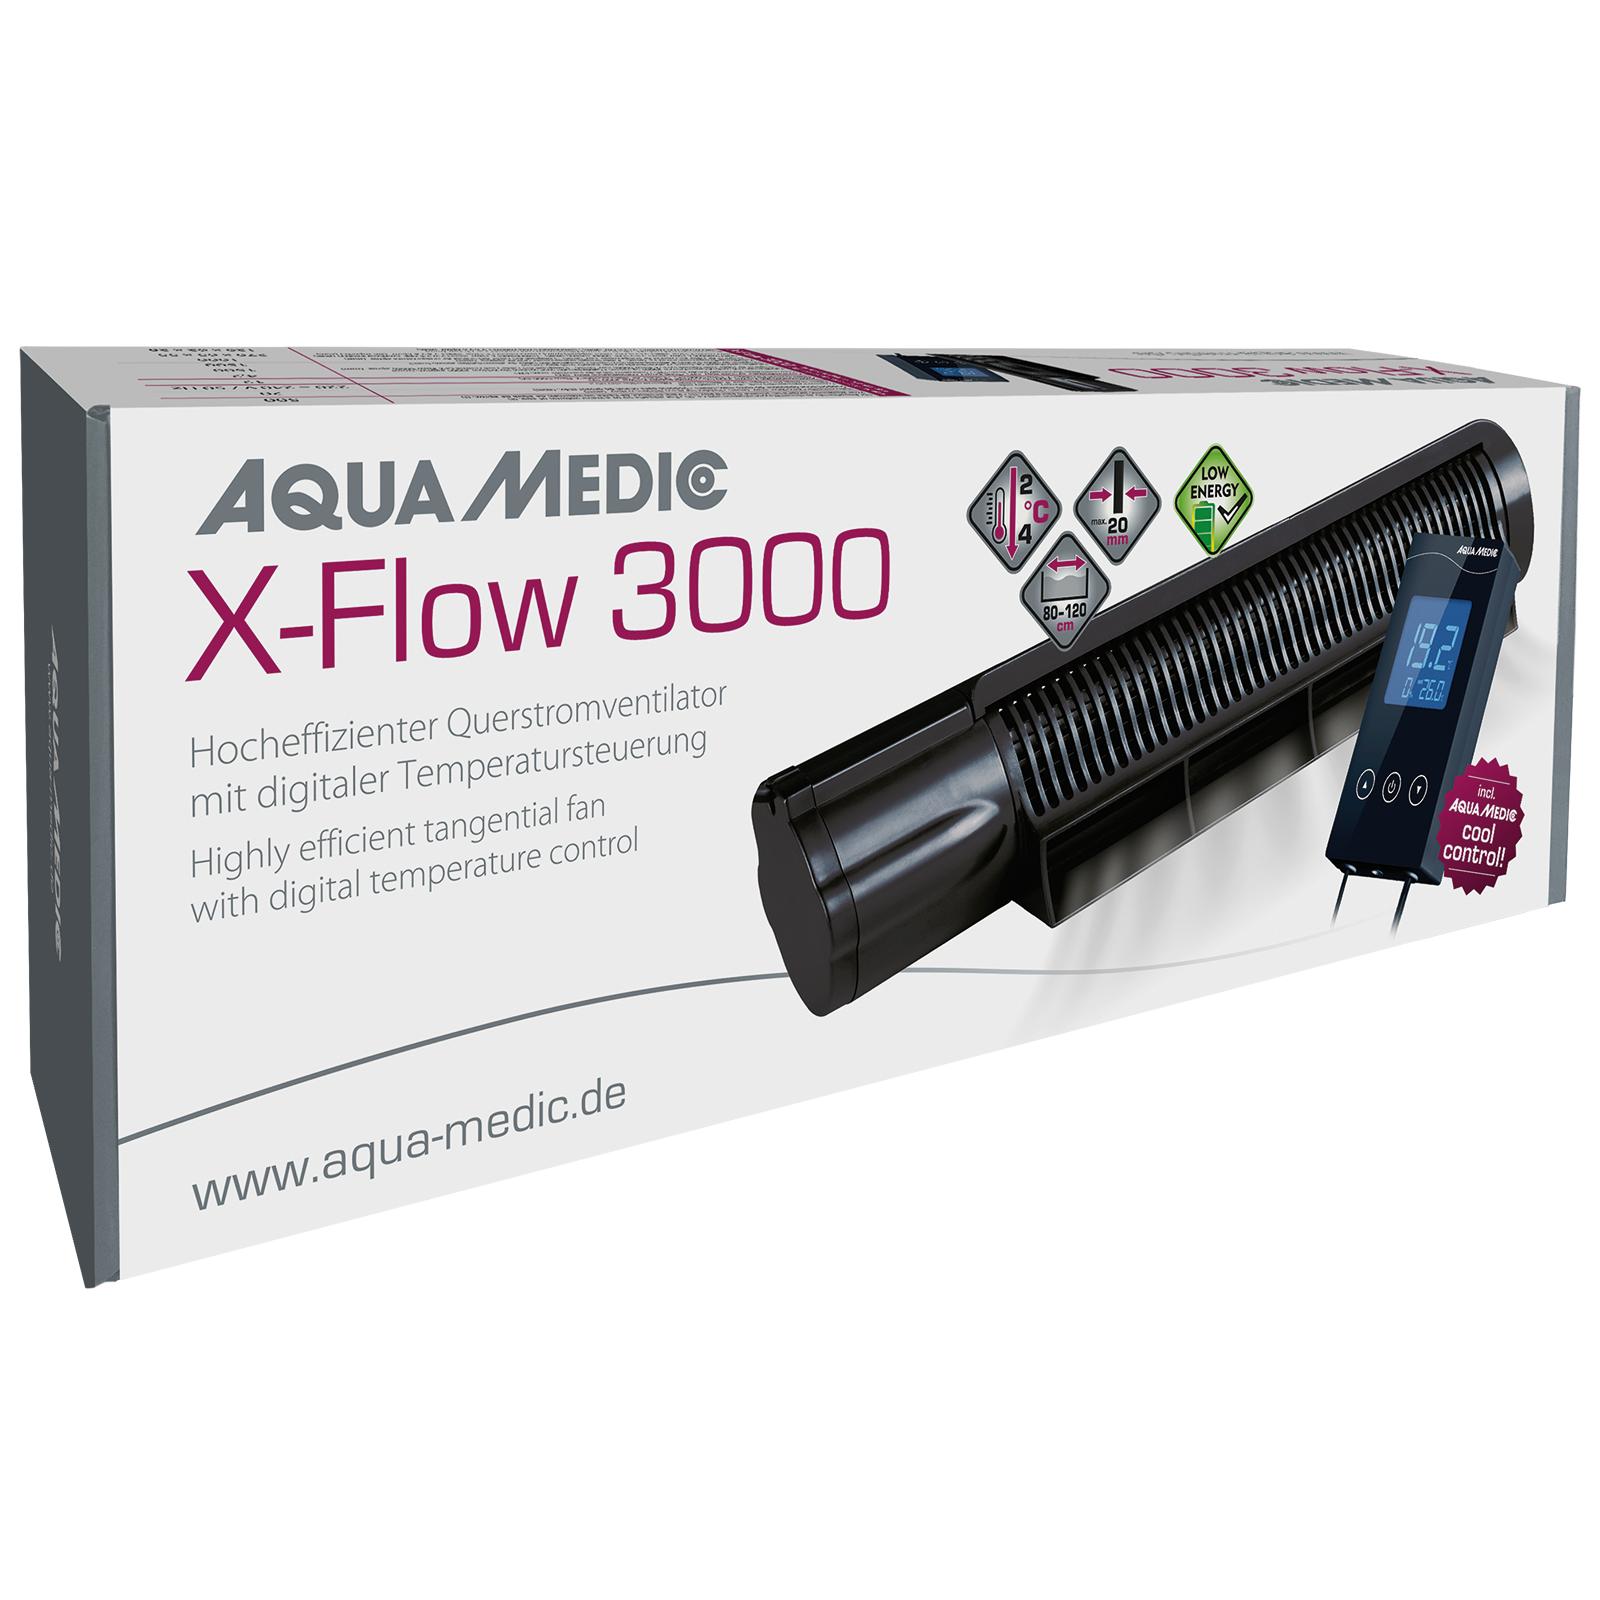 X-Flow 3000 Querstromventilator Aqua Medic